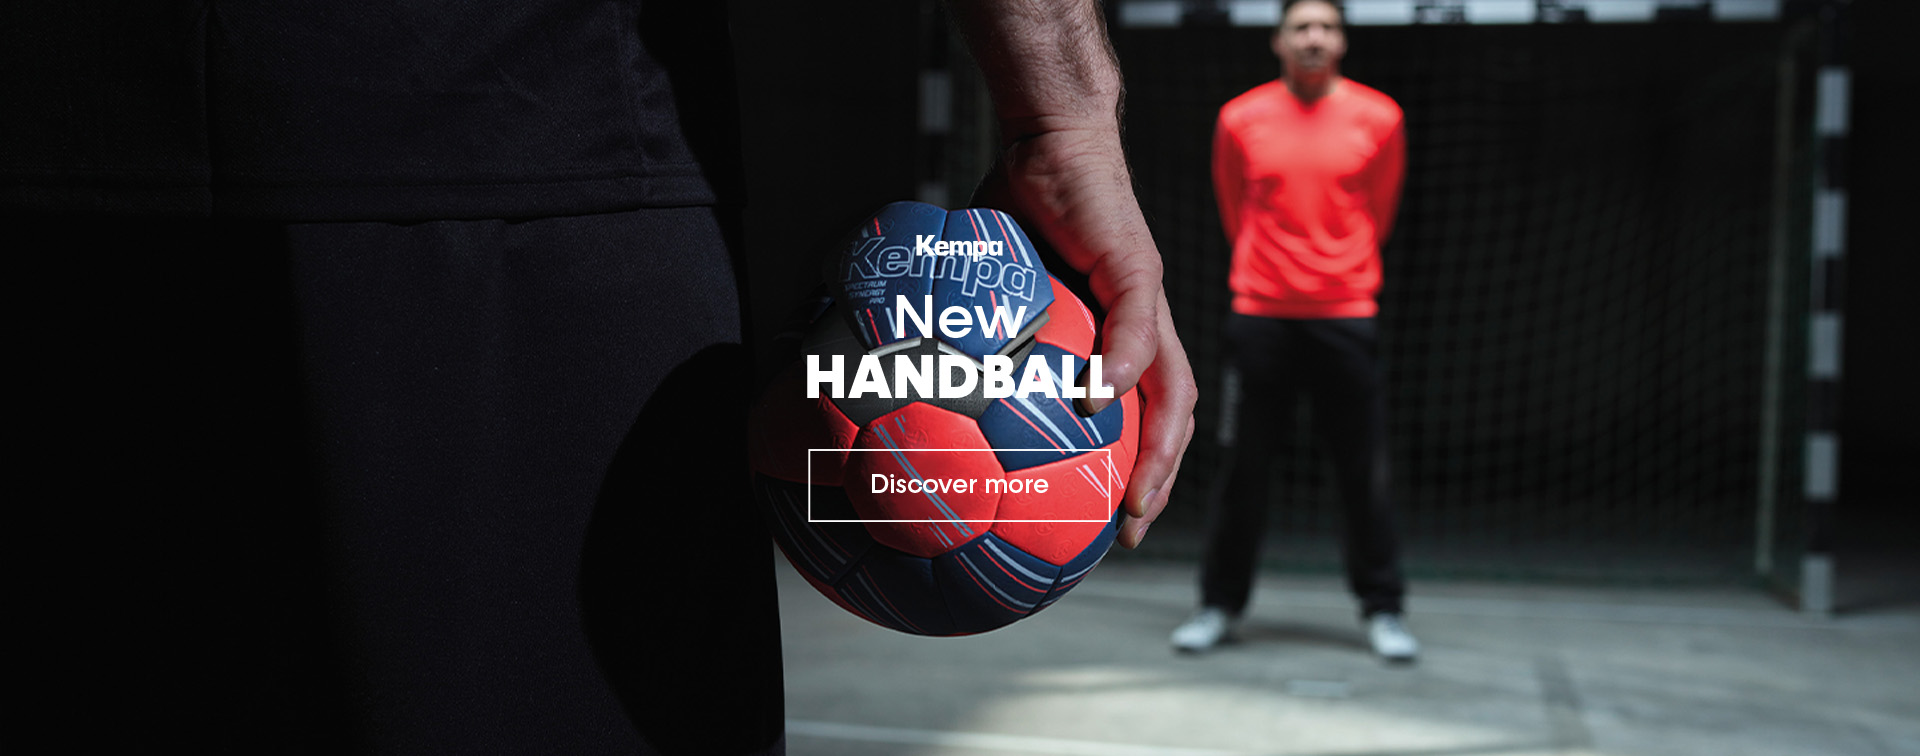 Hummel handball bags